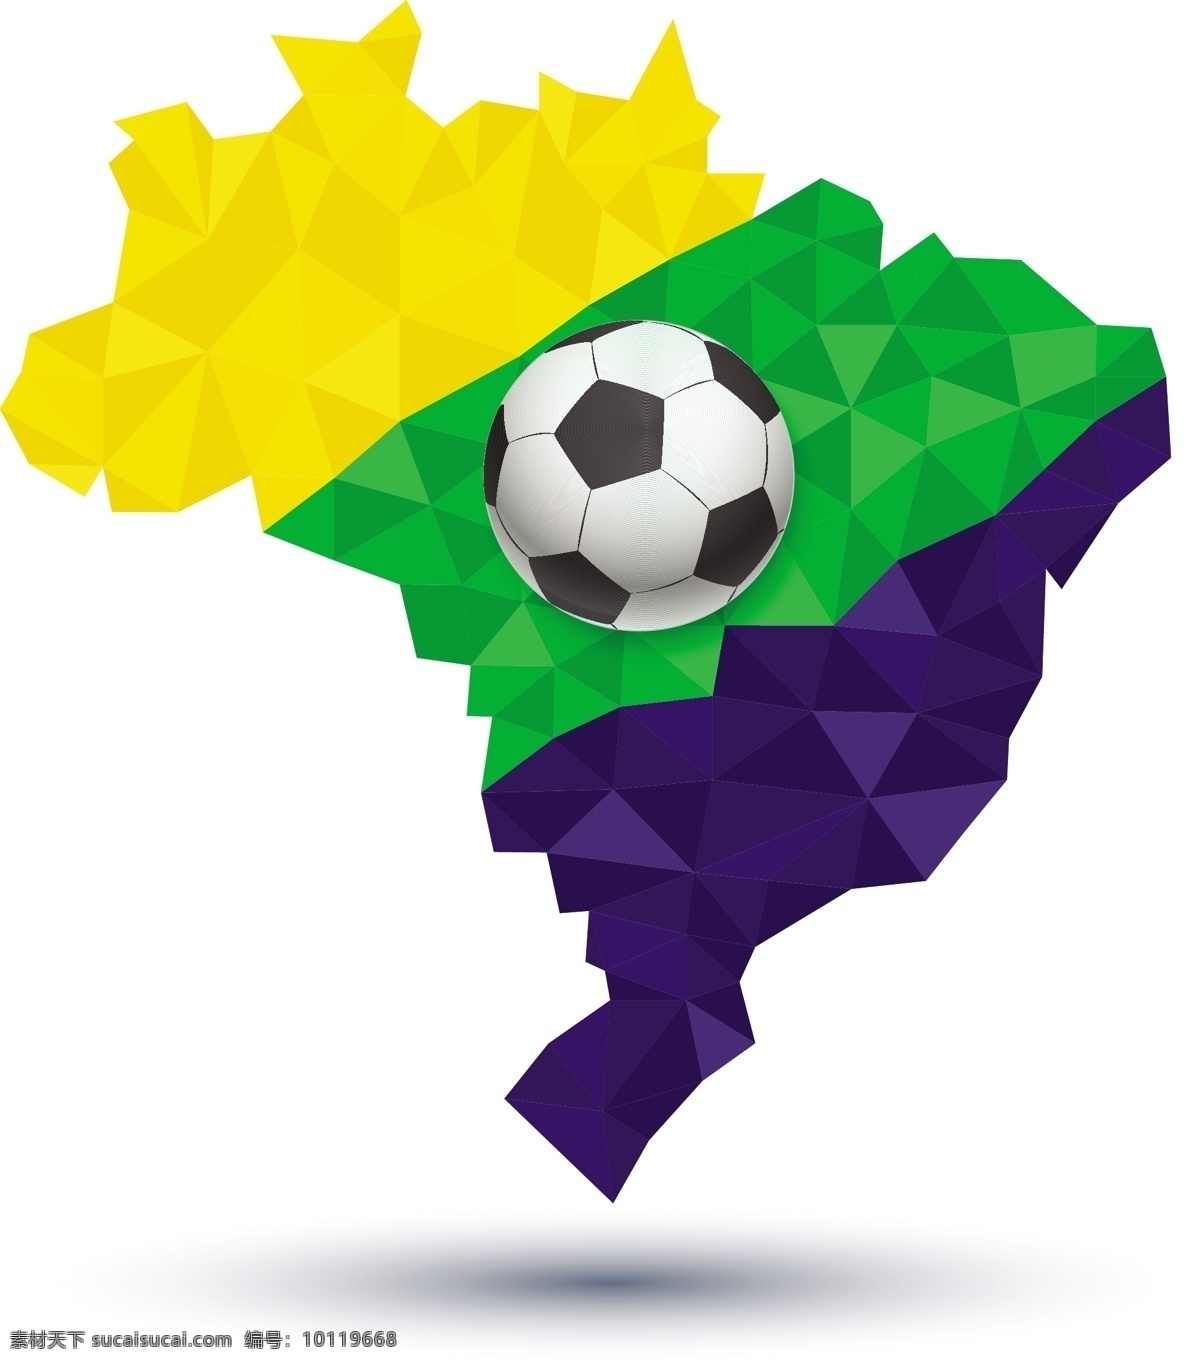 巴西 地图 足球 模板下载 世界杯 外国地图 体育运动 生活百科 矢量素材 白色